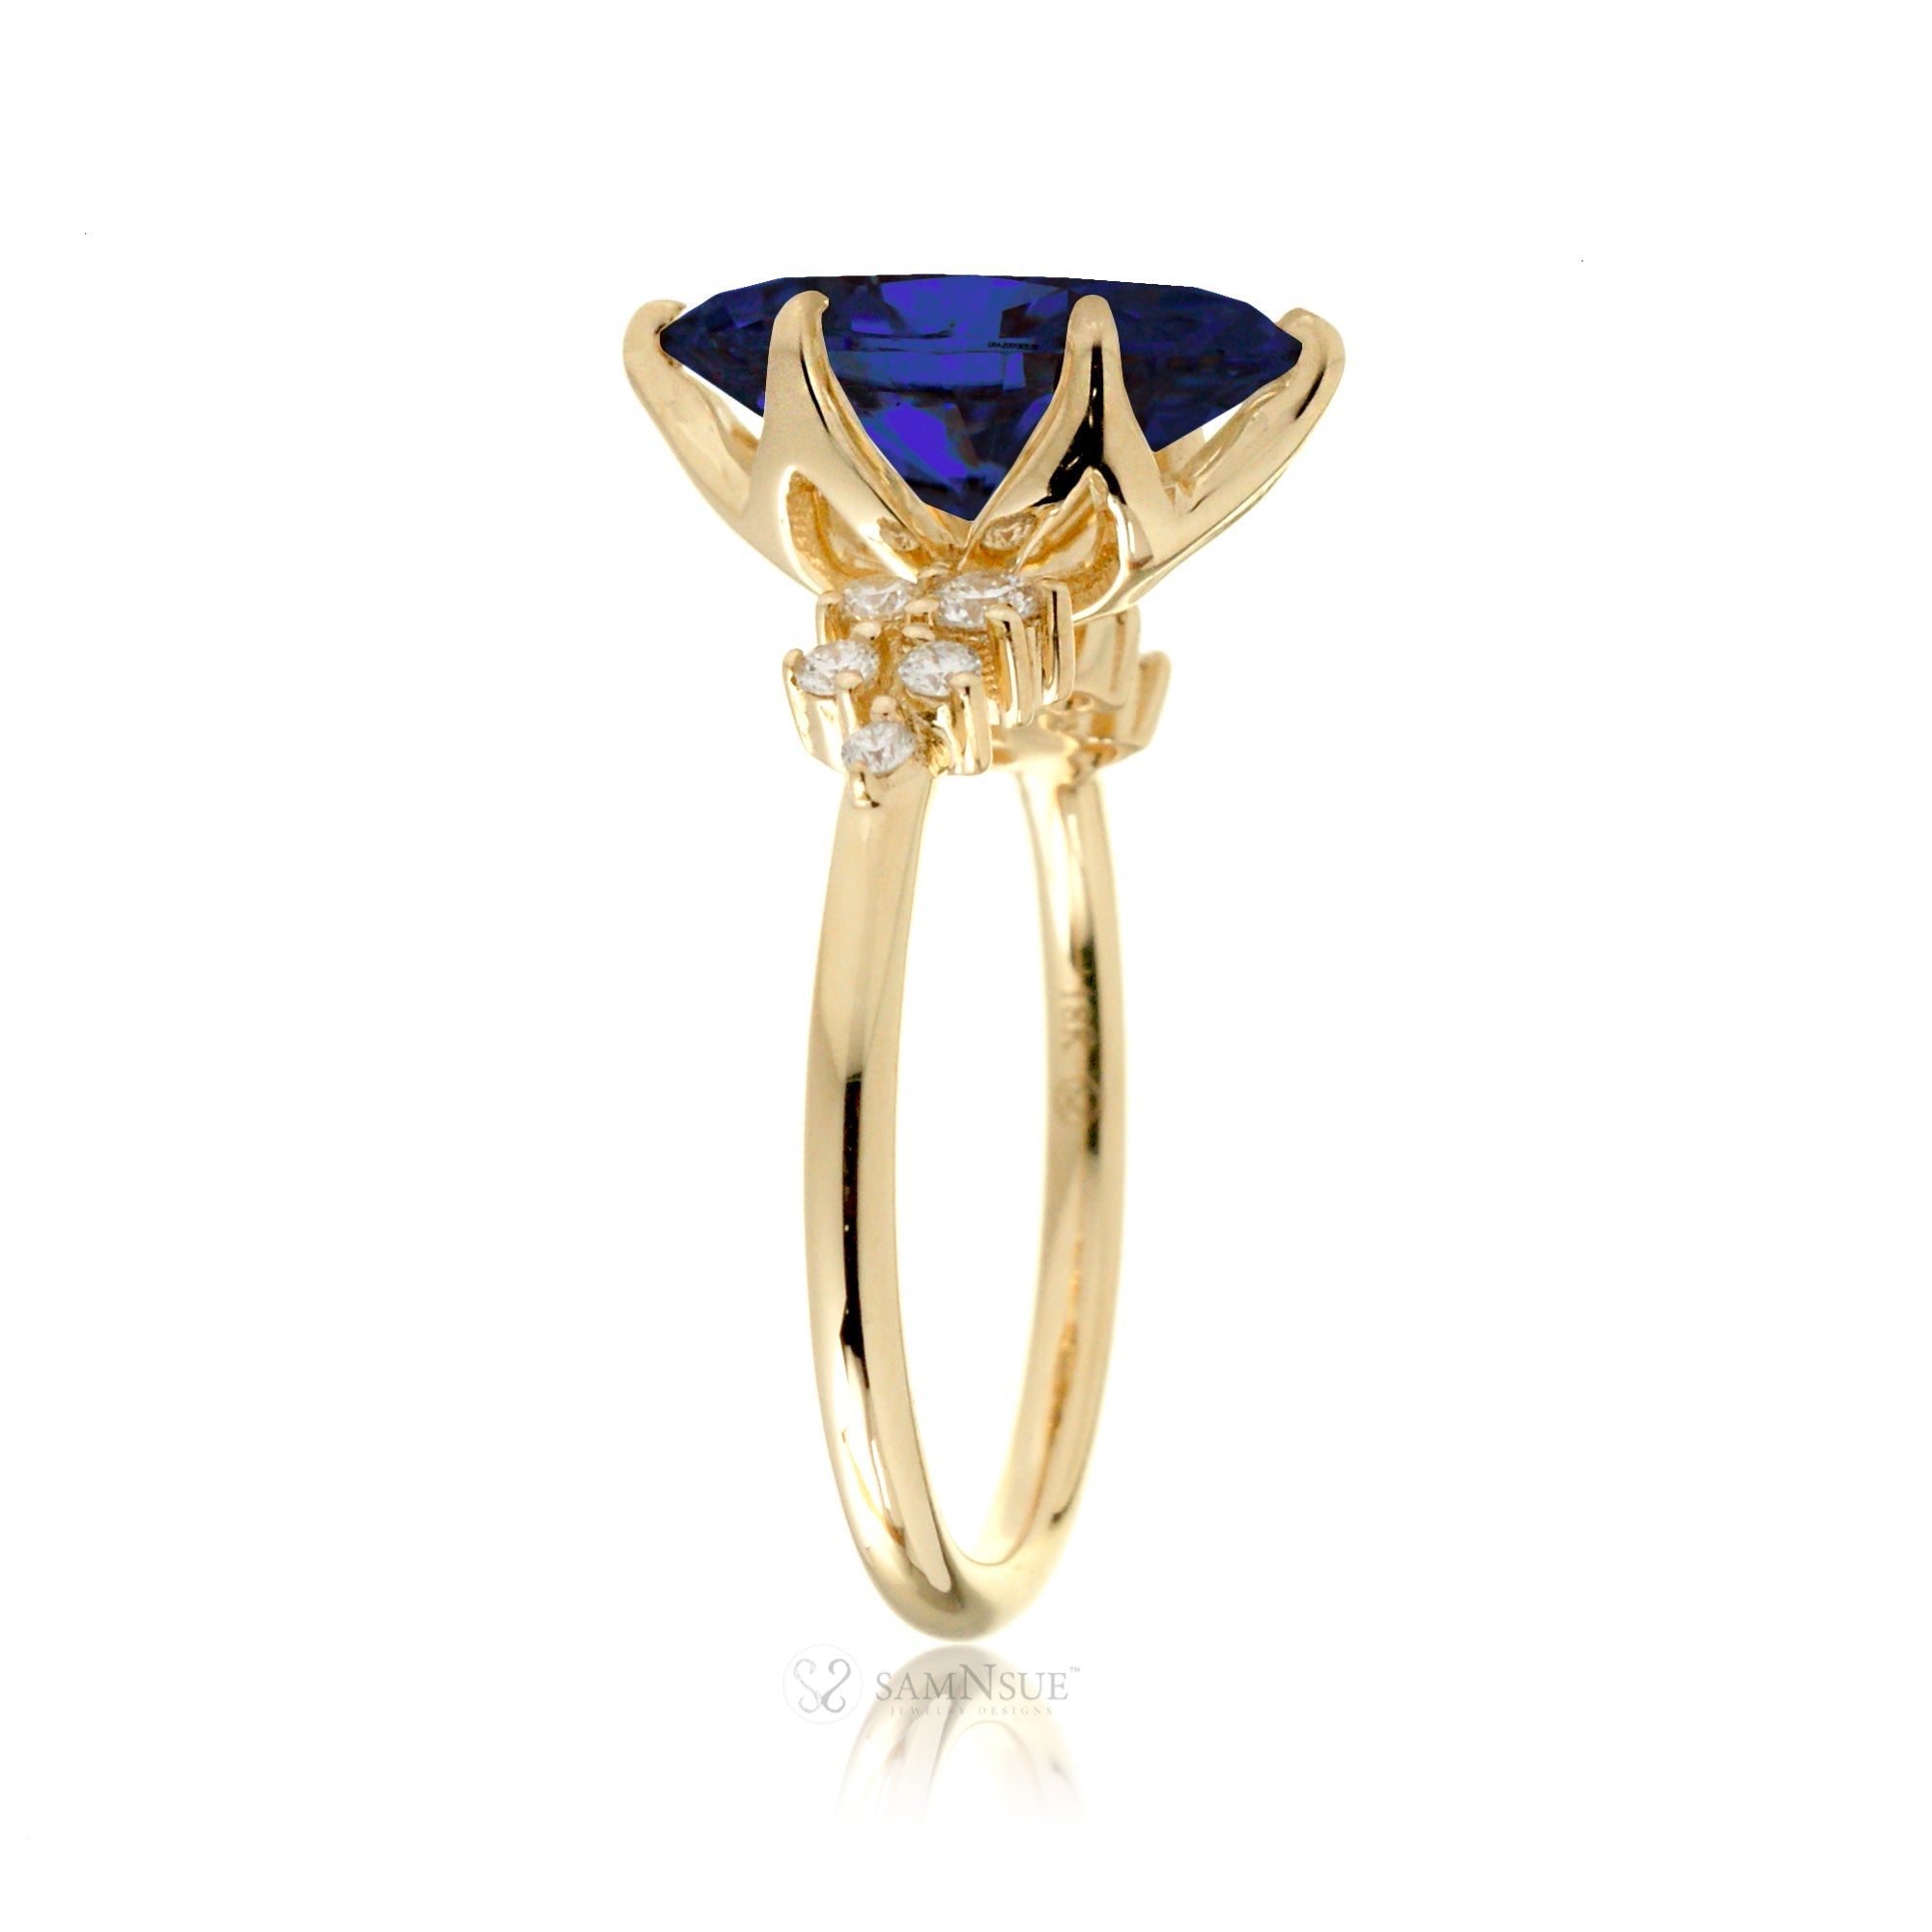 The Stella Pear Cut Blue Sapphire Ring (Lab-Grown)